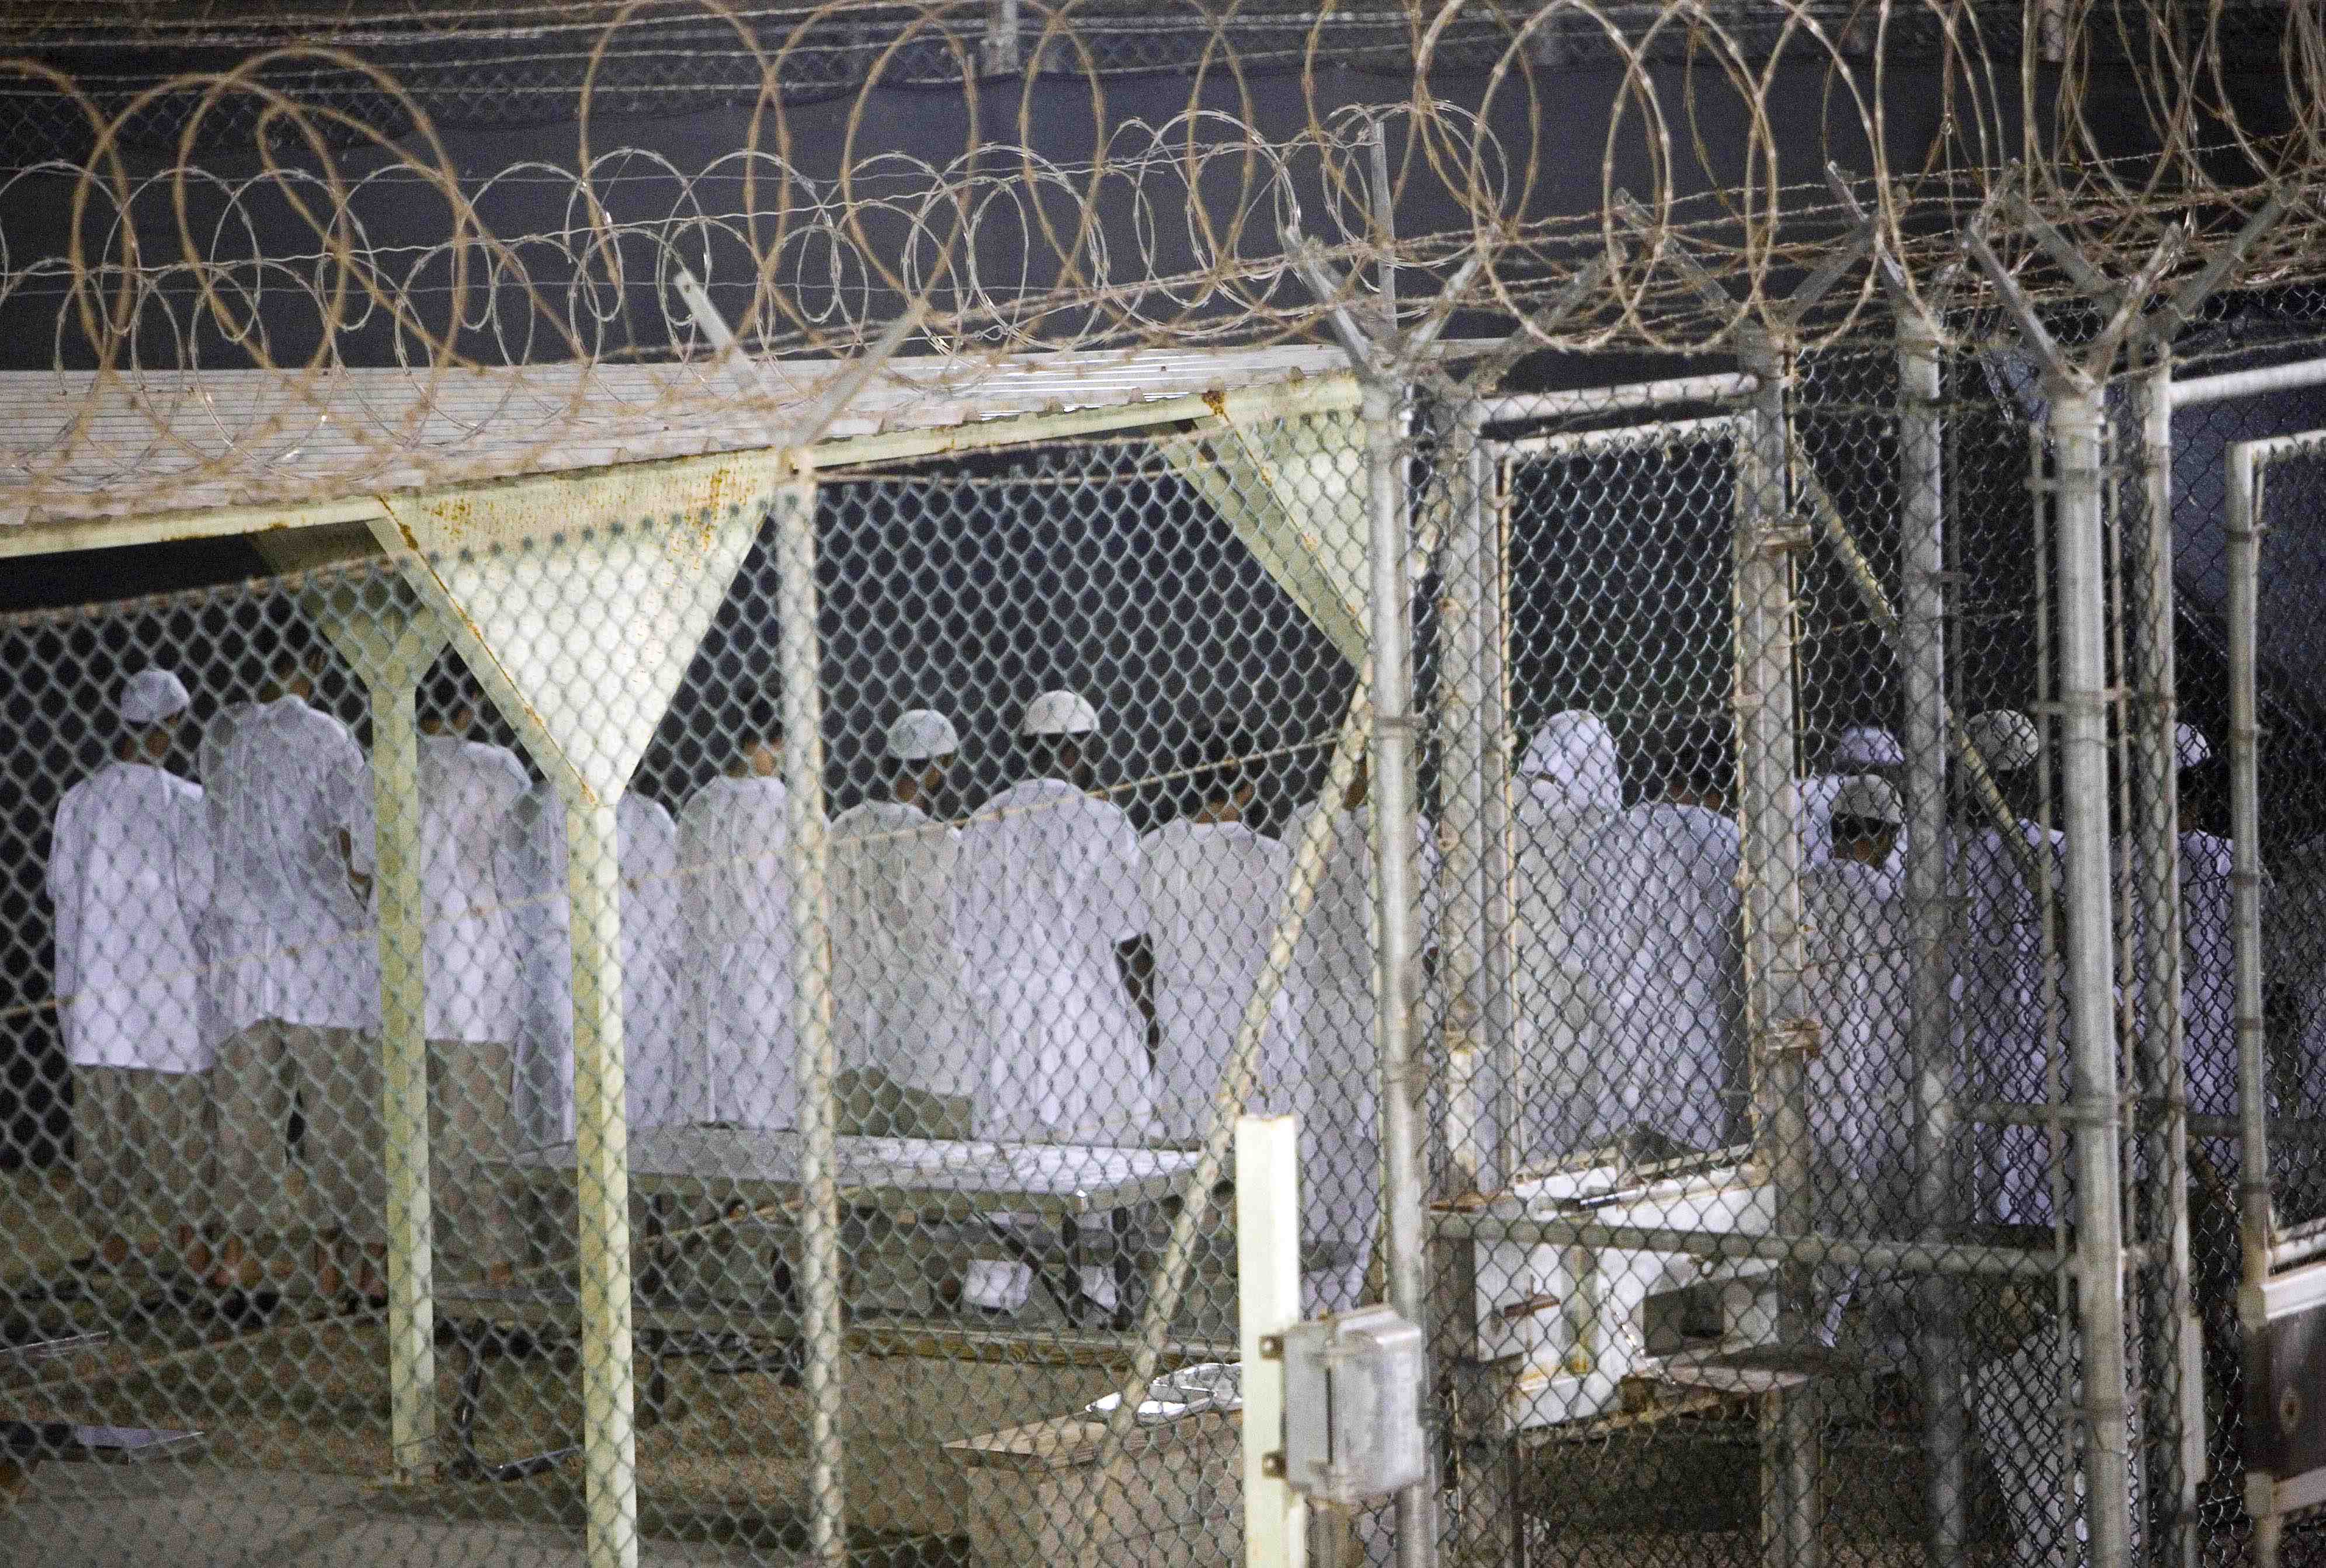 USA har fått skarp internationell kritik för behandlingen av fångarna på Guantanamo. I synnerhet har kritik riktats mot de förhörsmetoder som används, vilka anses vara tortyr. Internationella människorättsorganisationer hävdar att utebliven rättsprocess o